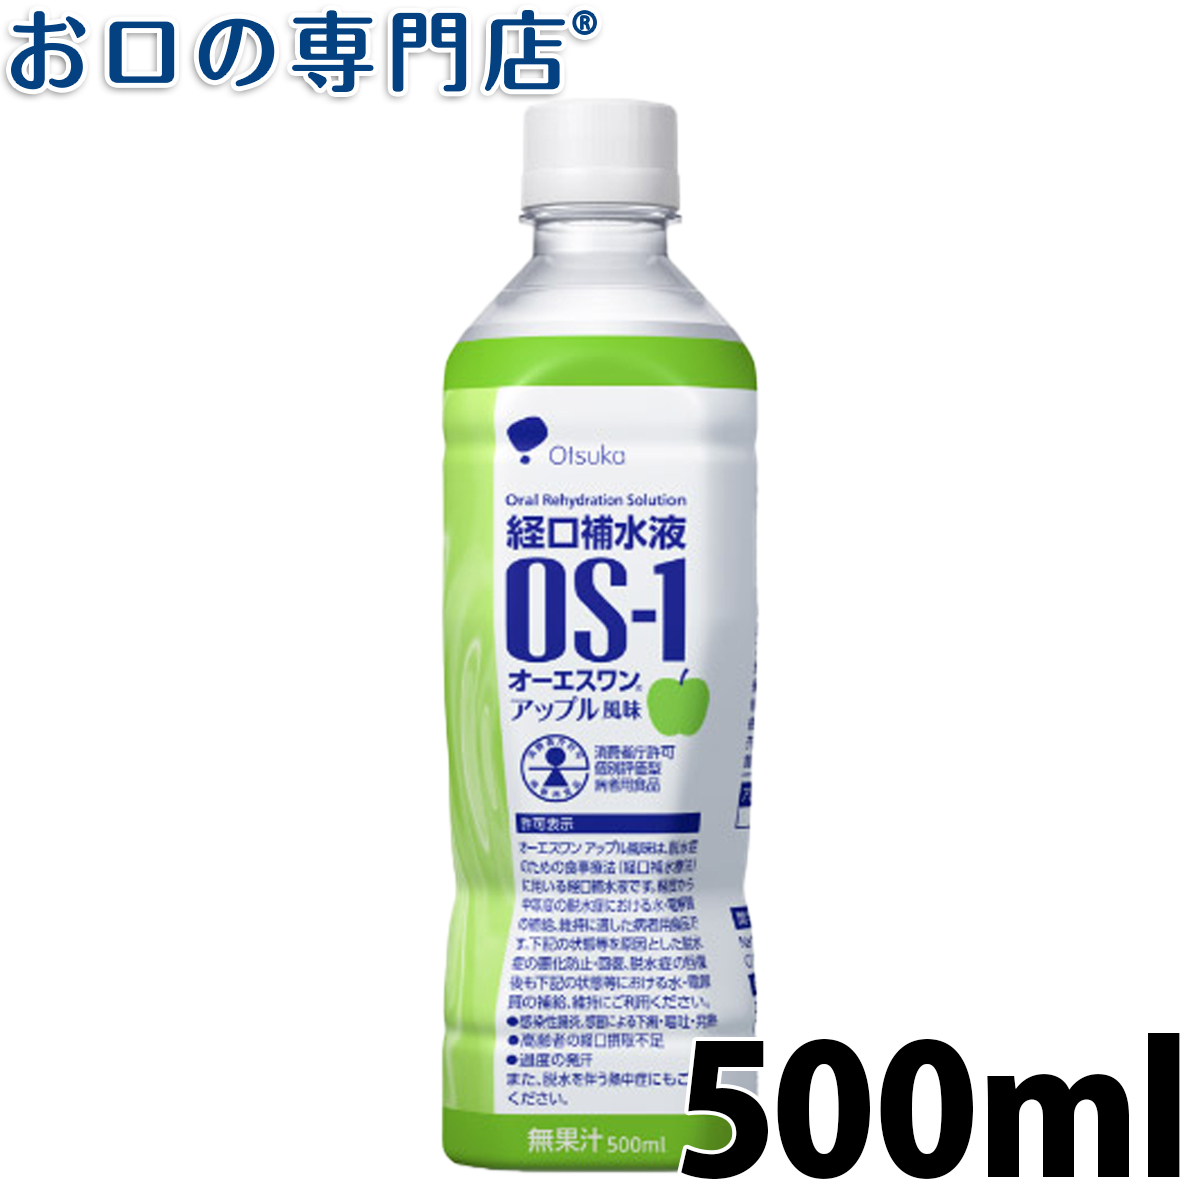 経口補水液 OS-1   inゼリーマルチビタミン